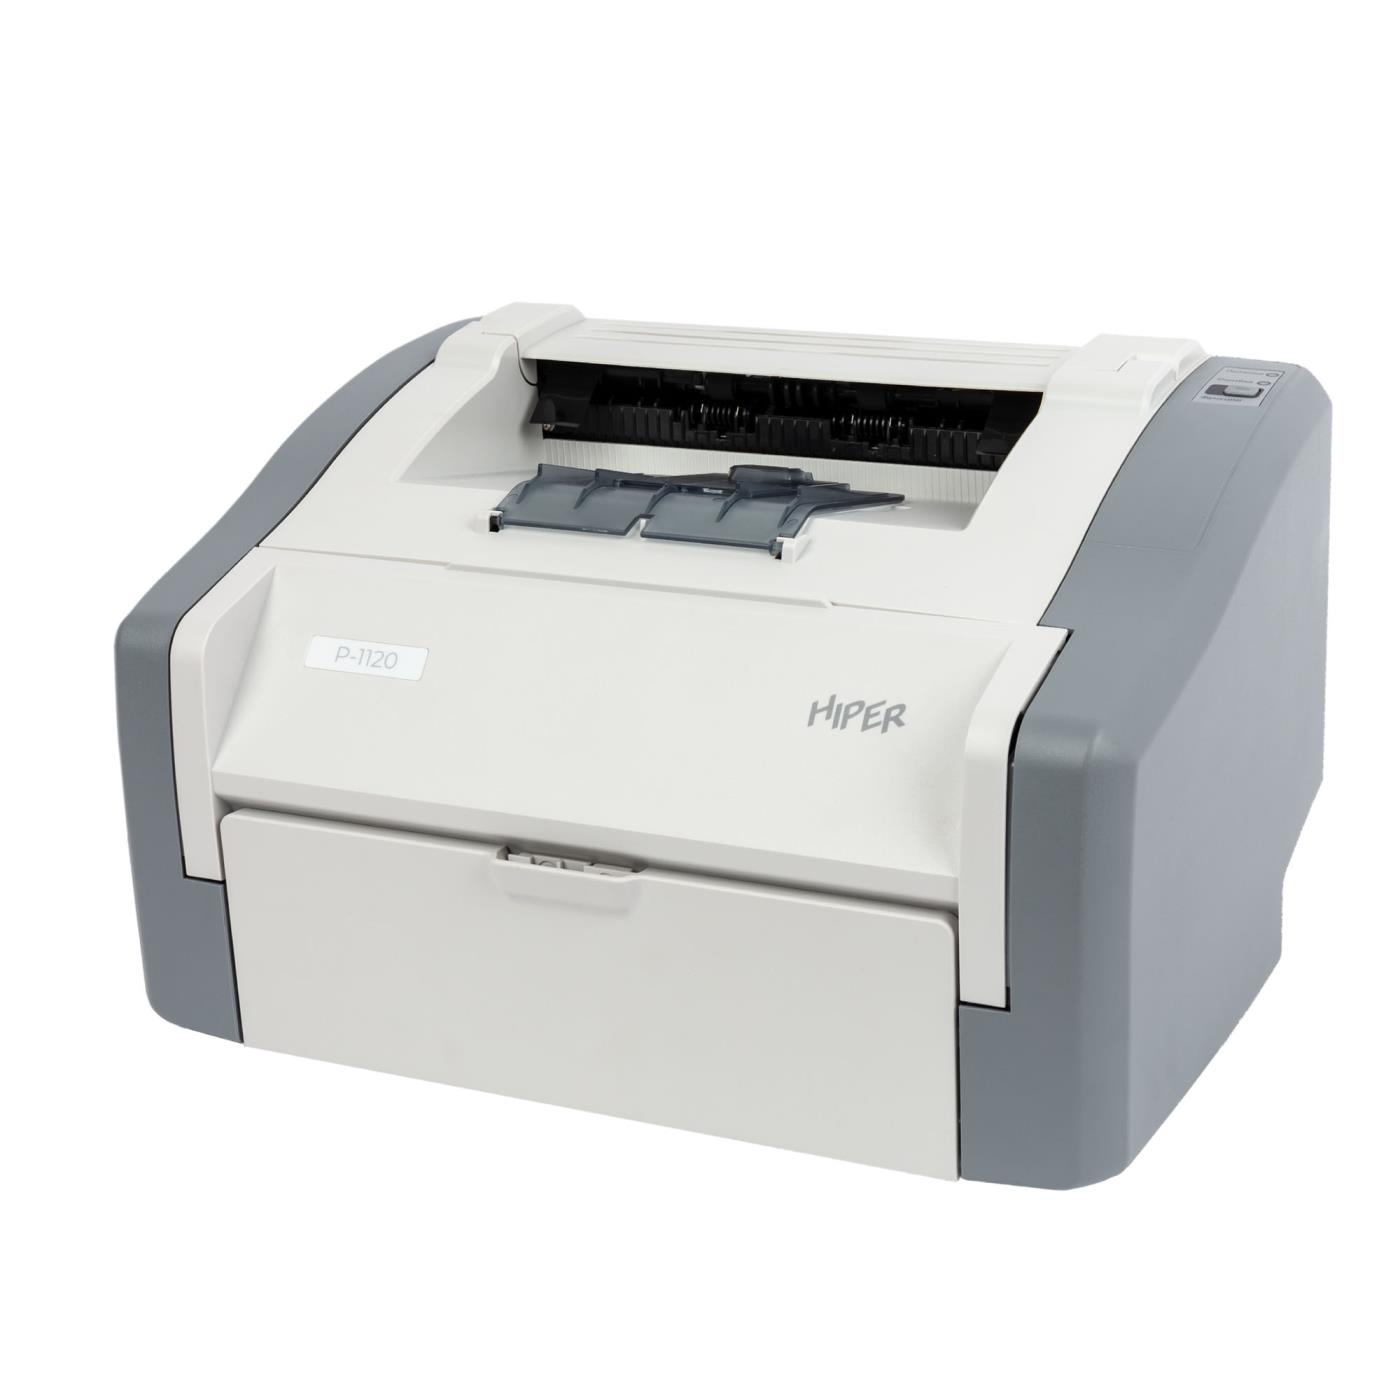 Принтер Hiper P-1120 White/Gray